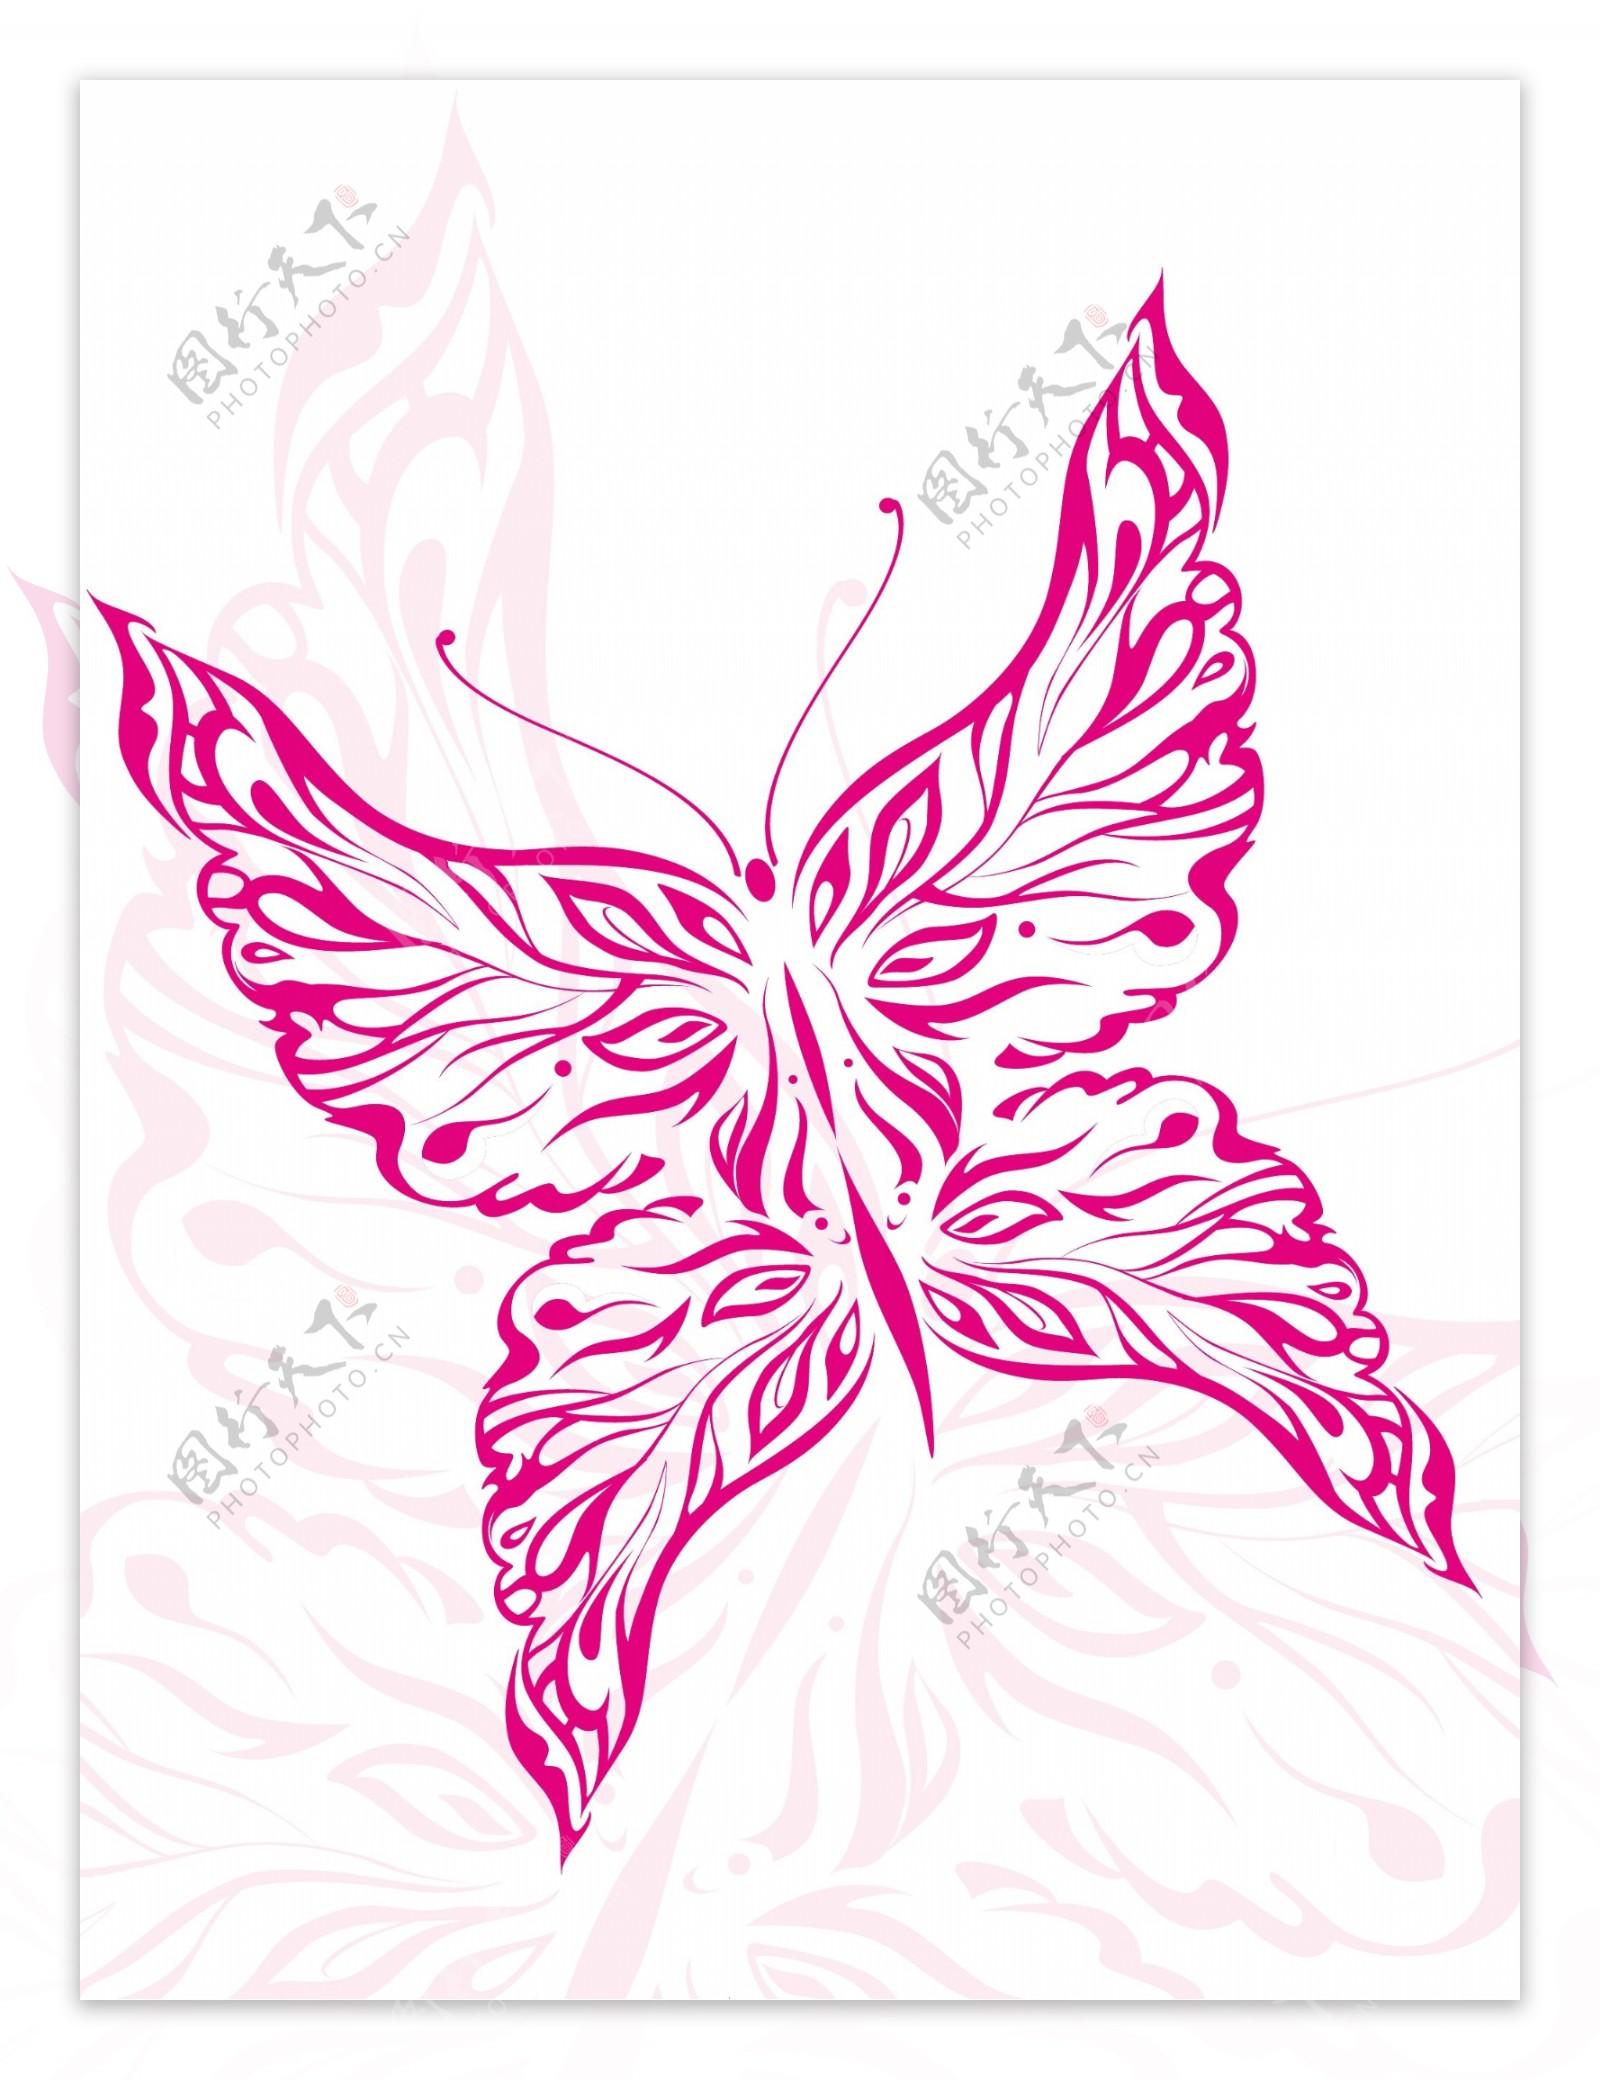 说明了美丽的粉红色的蝴蝶纹身